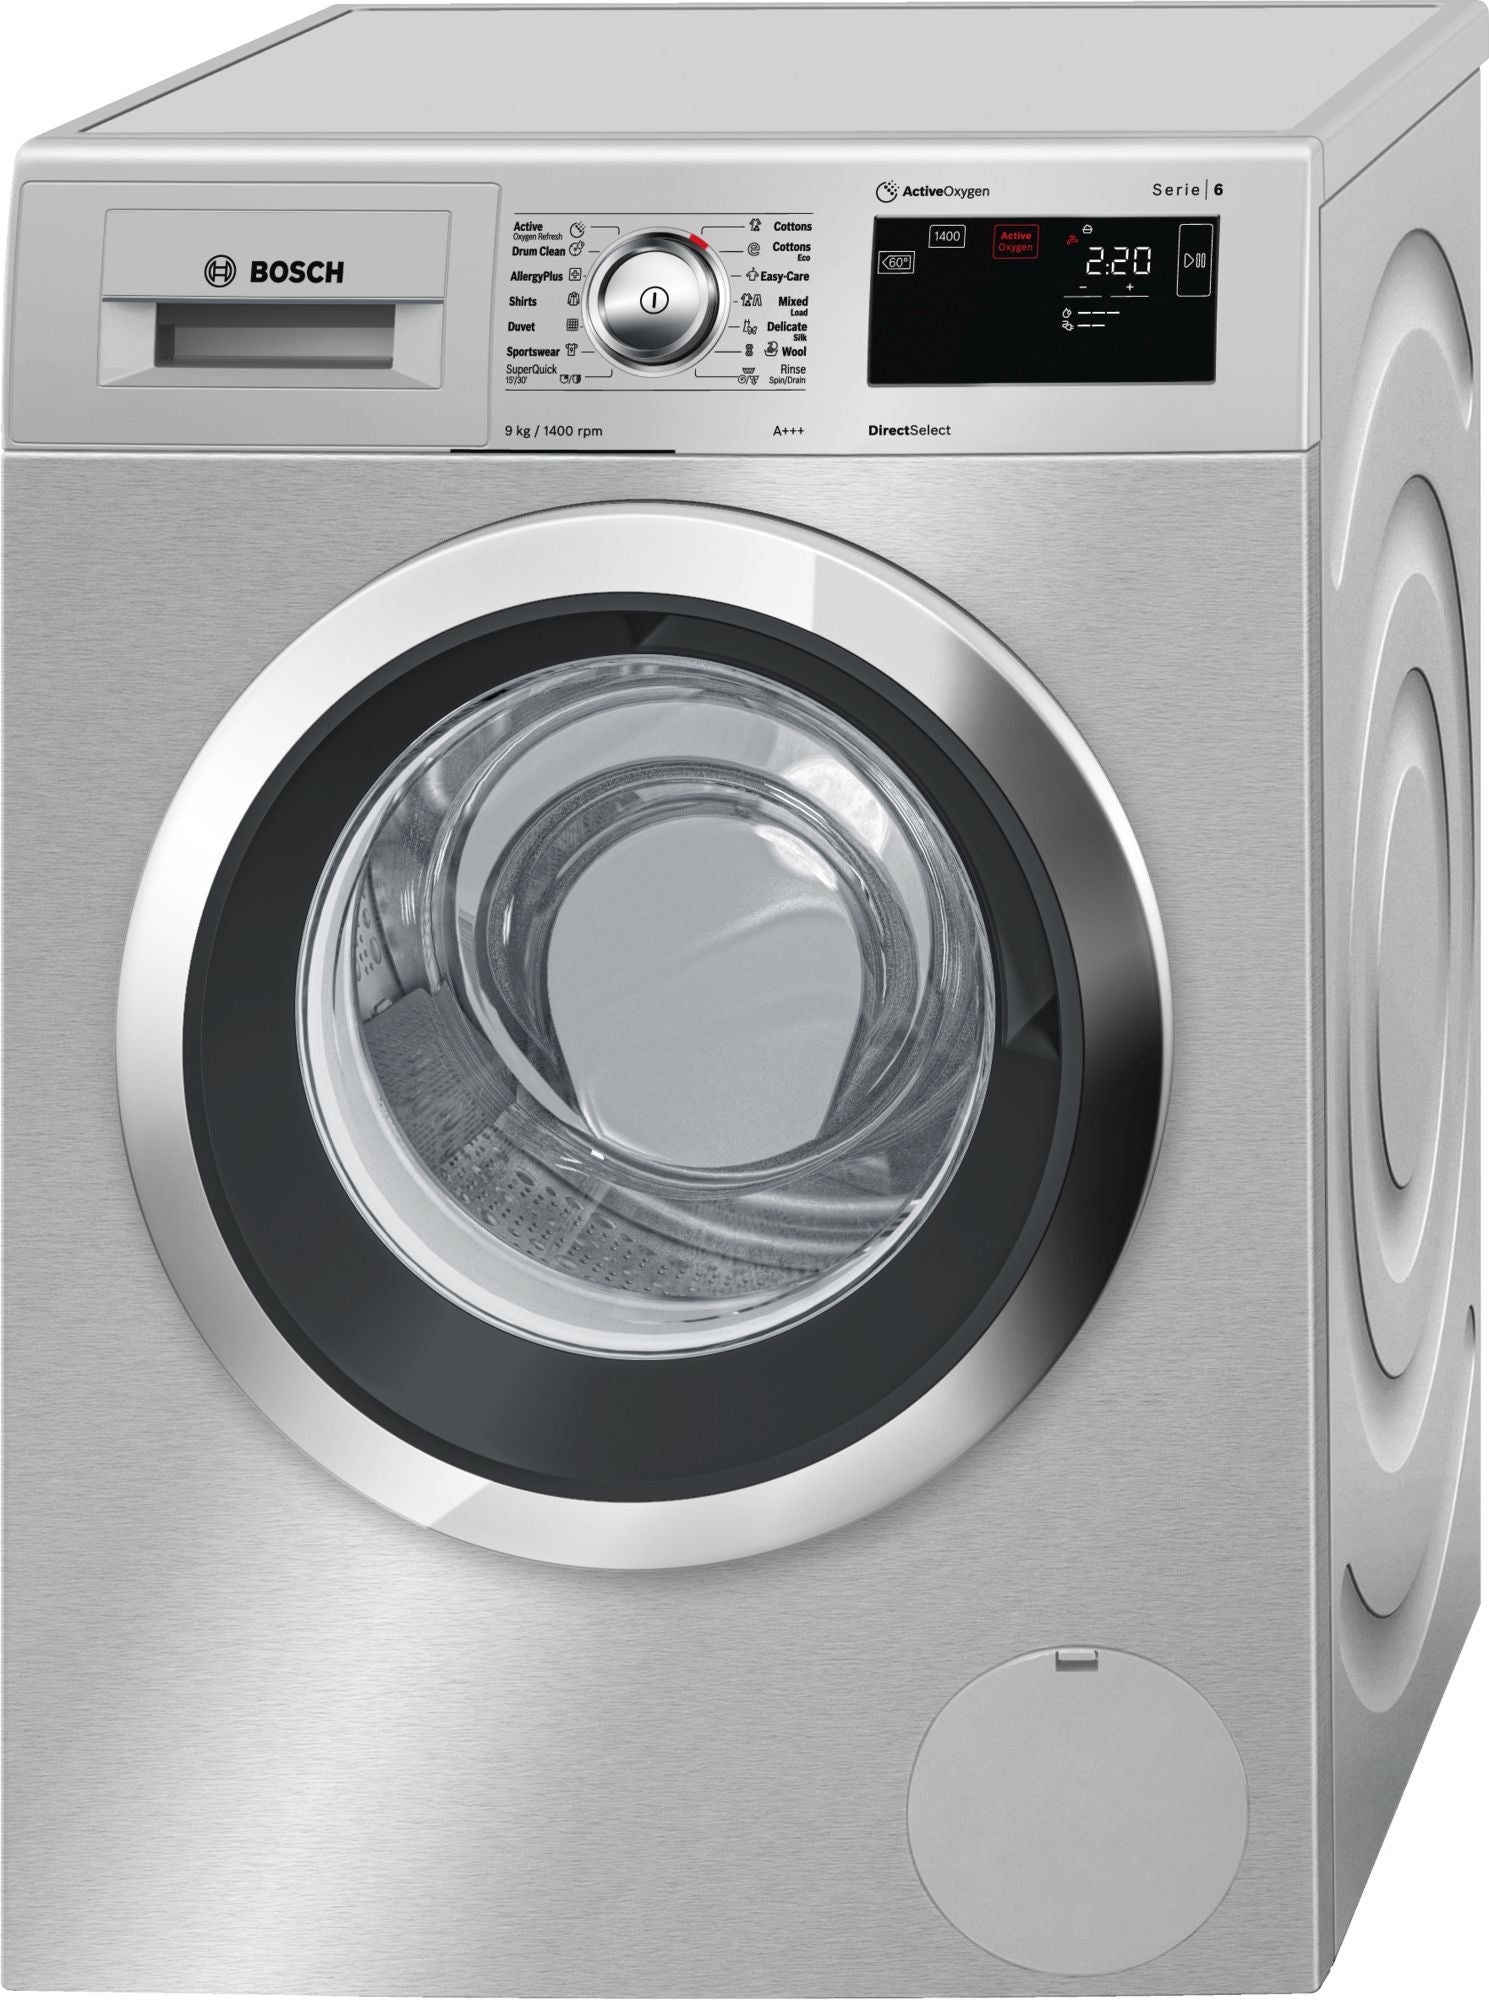 BOSCH 9kg Front Loader Washing Machine Silver Inox